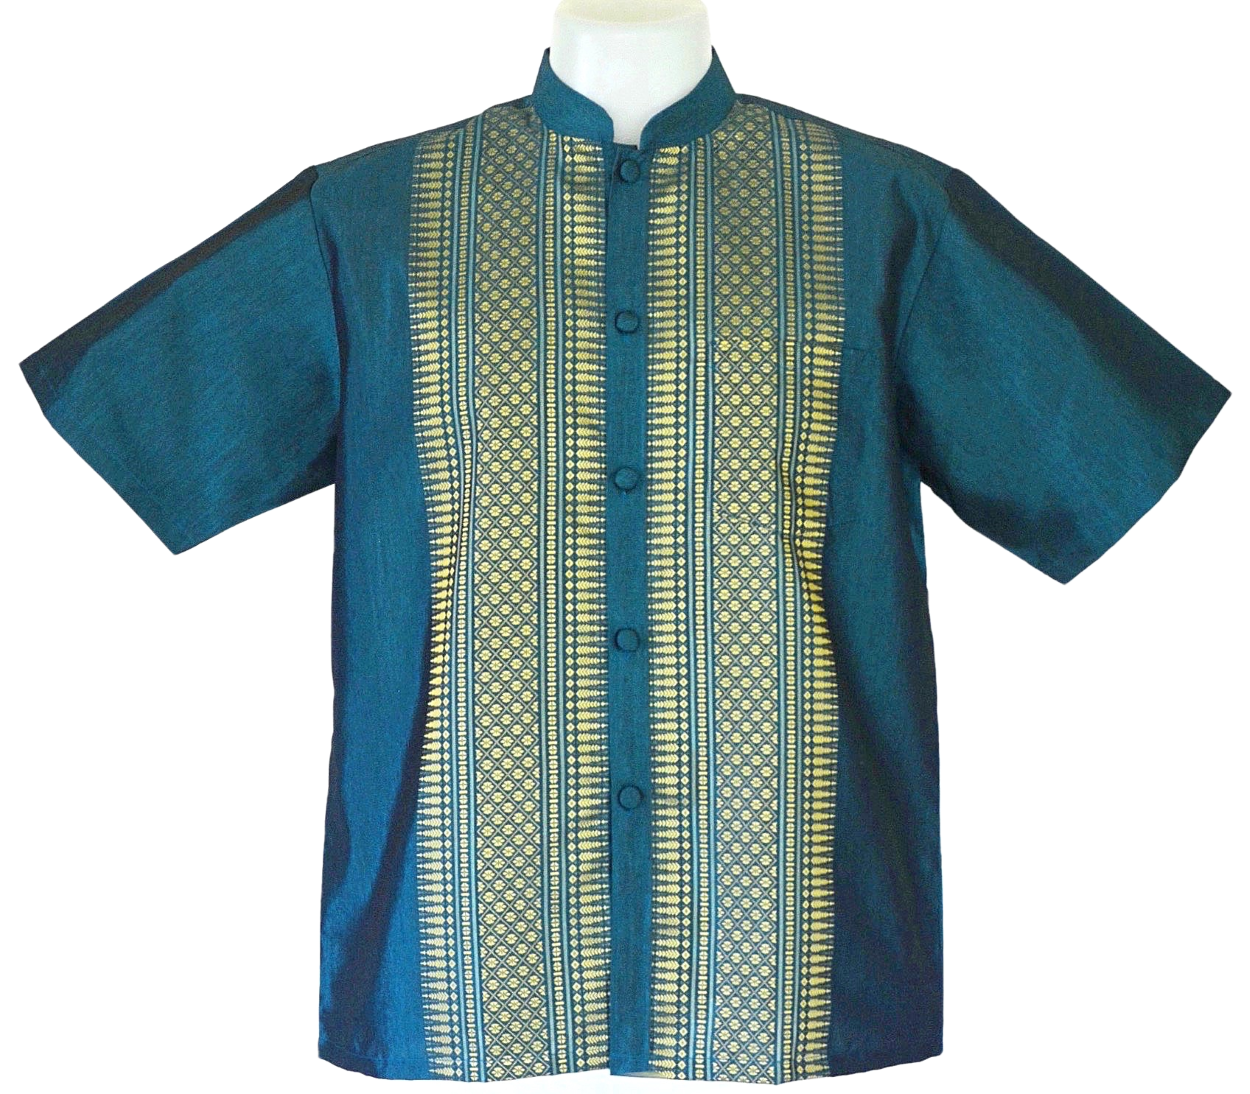 เสื้อไทย เสื้อผู้ชาย ชุดไทยชาย แขนสั้น คอจีน ไซส์ M อก 44 นิ้ว (Size M) Thai Shirt/Thai Costume for Men/Short Sleeve/Mandarin Collar/Chest 44"